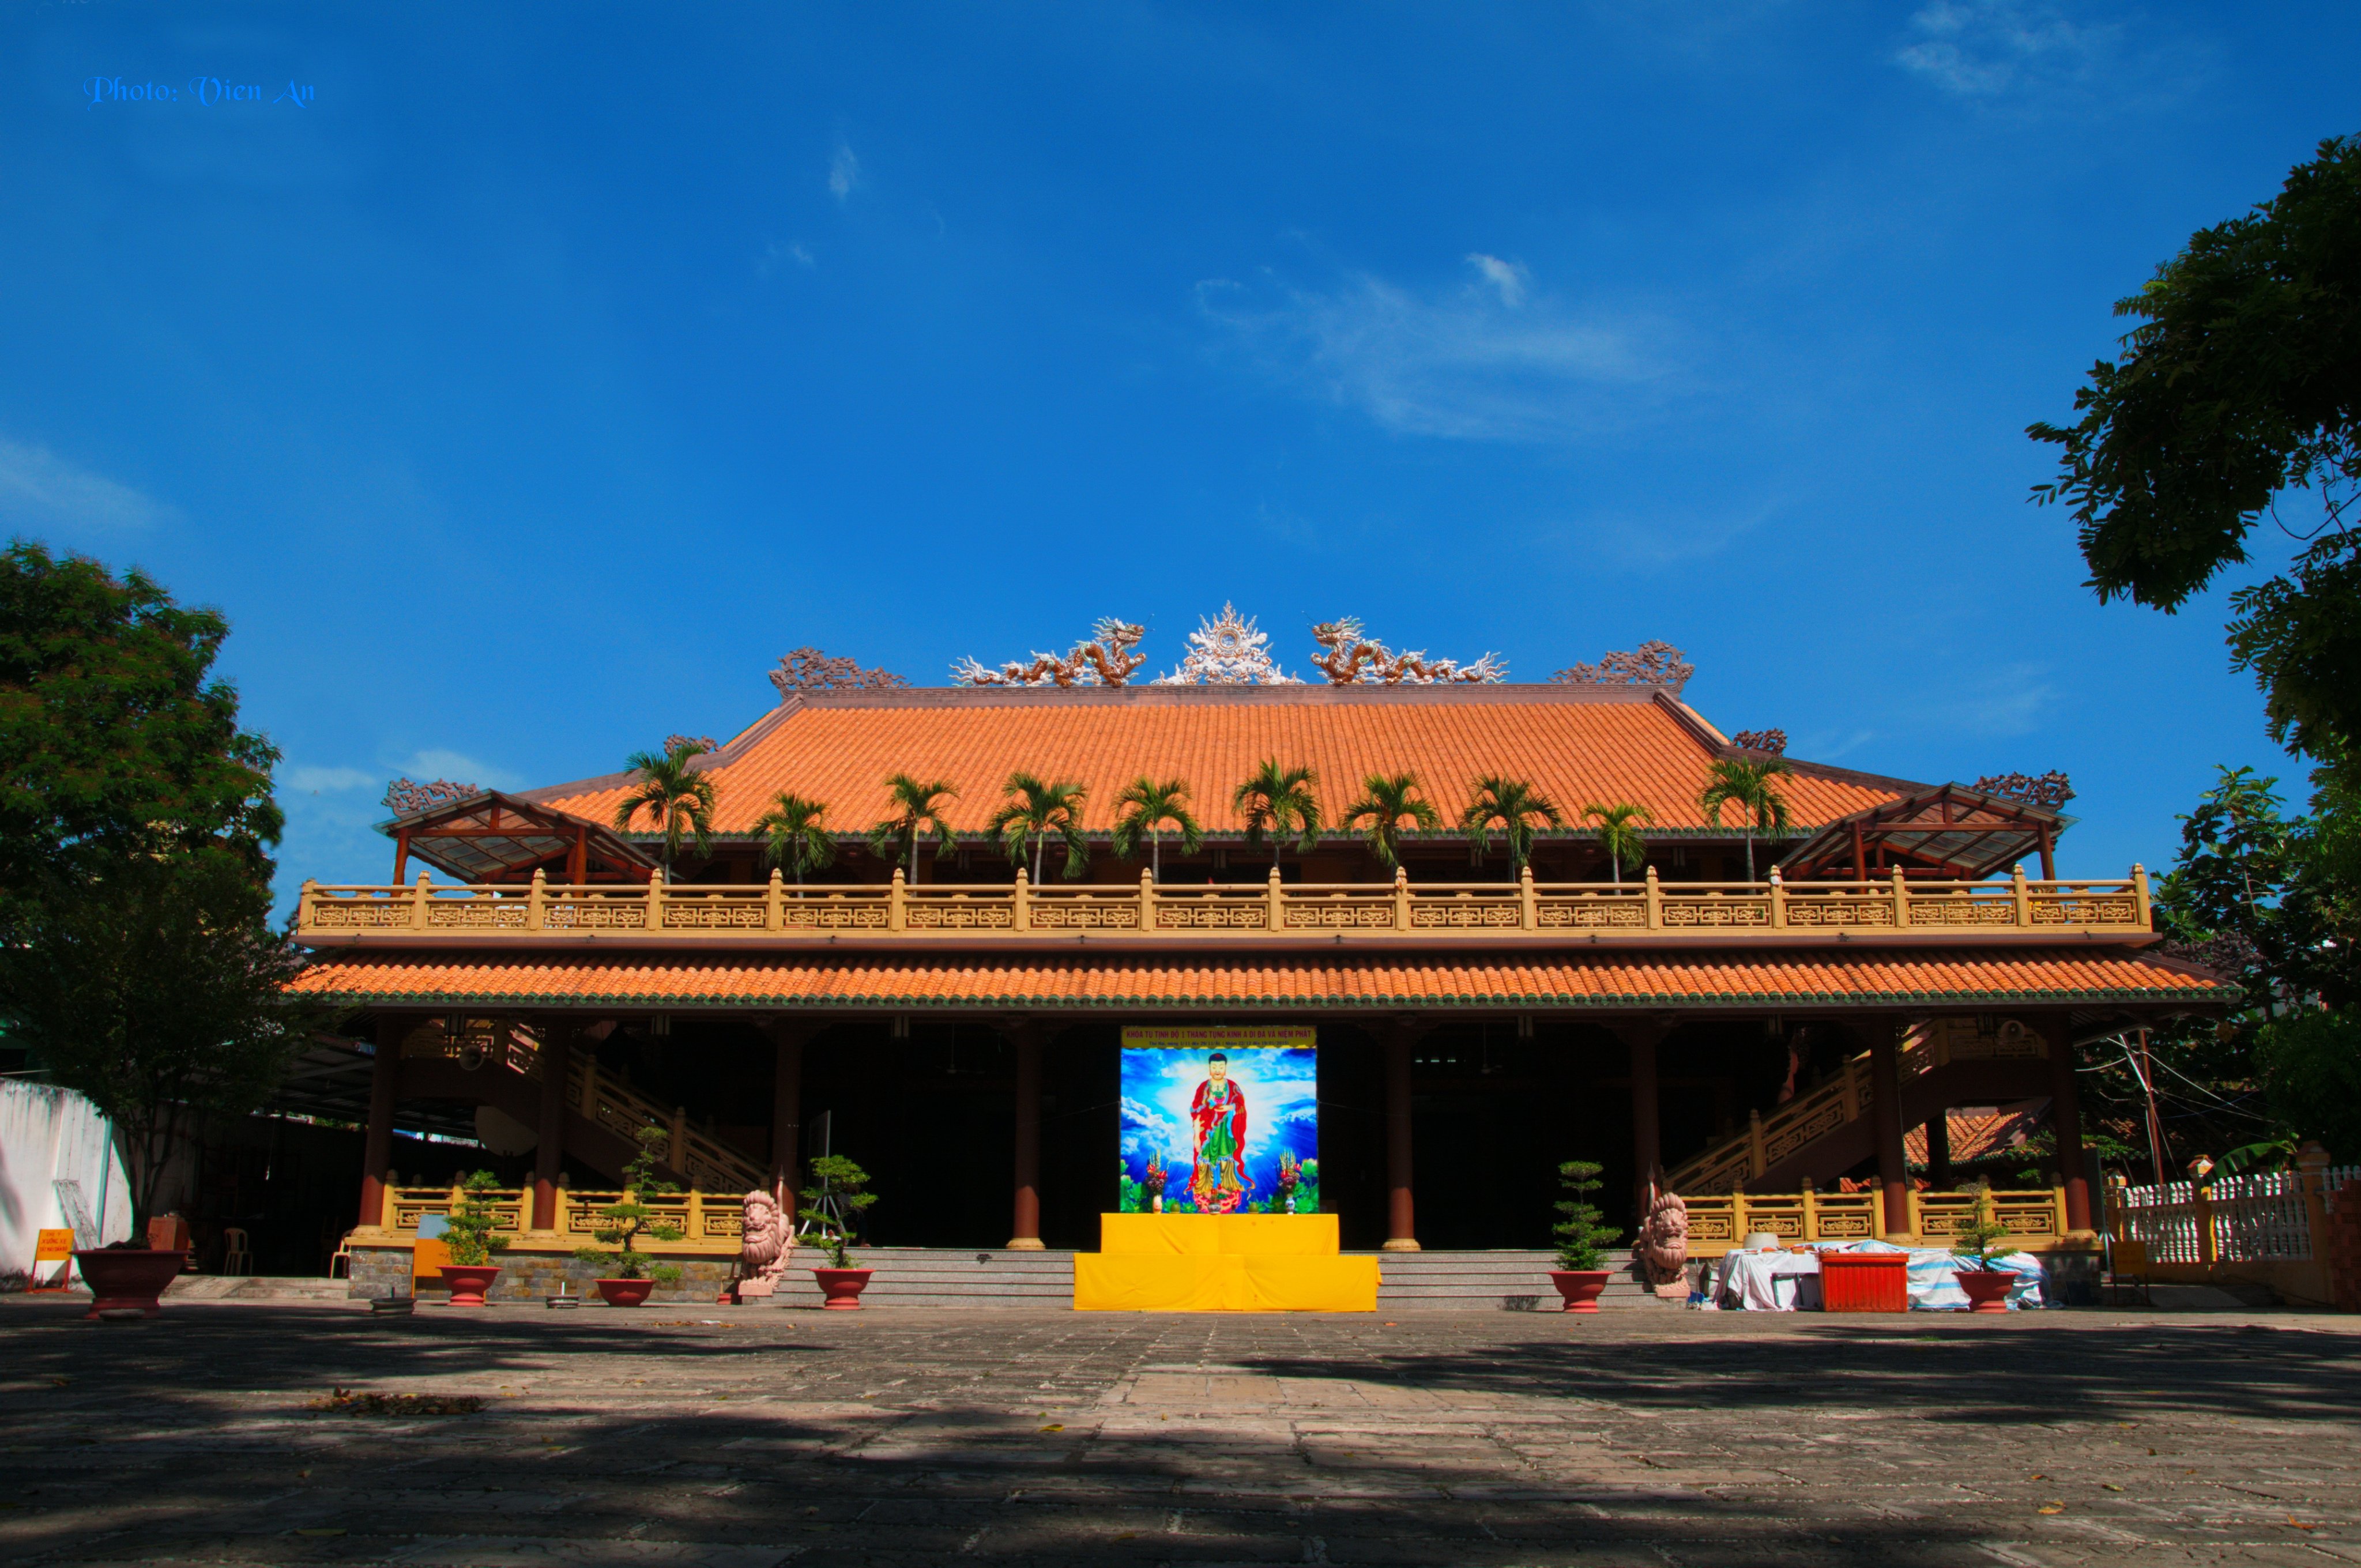 Khám phá chùa Giác Lâm - ngôi cổ tự trăm năm giữa lòng Sài Gòn - iVIVU.com